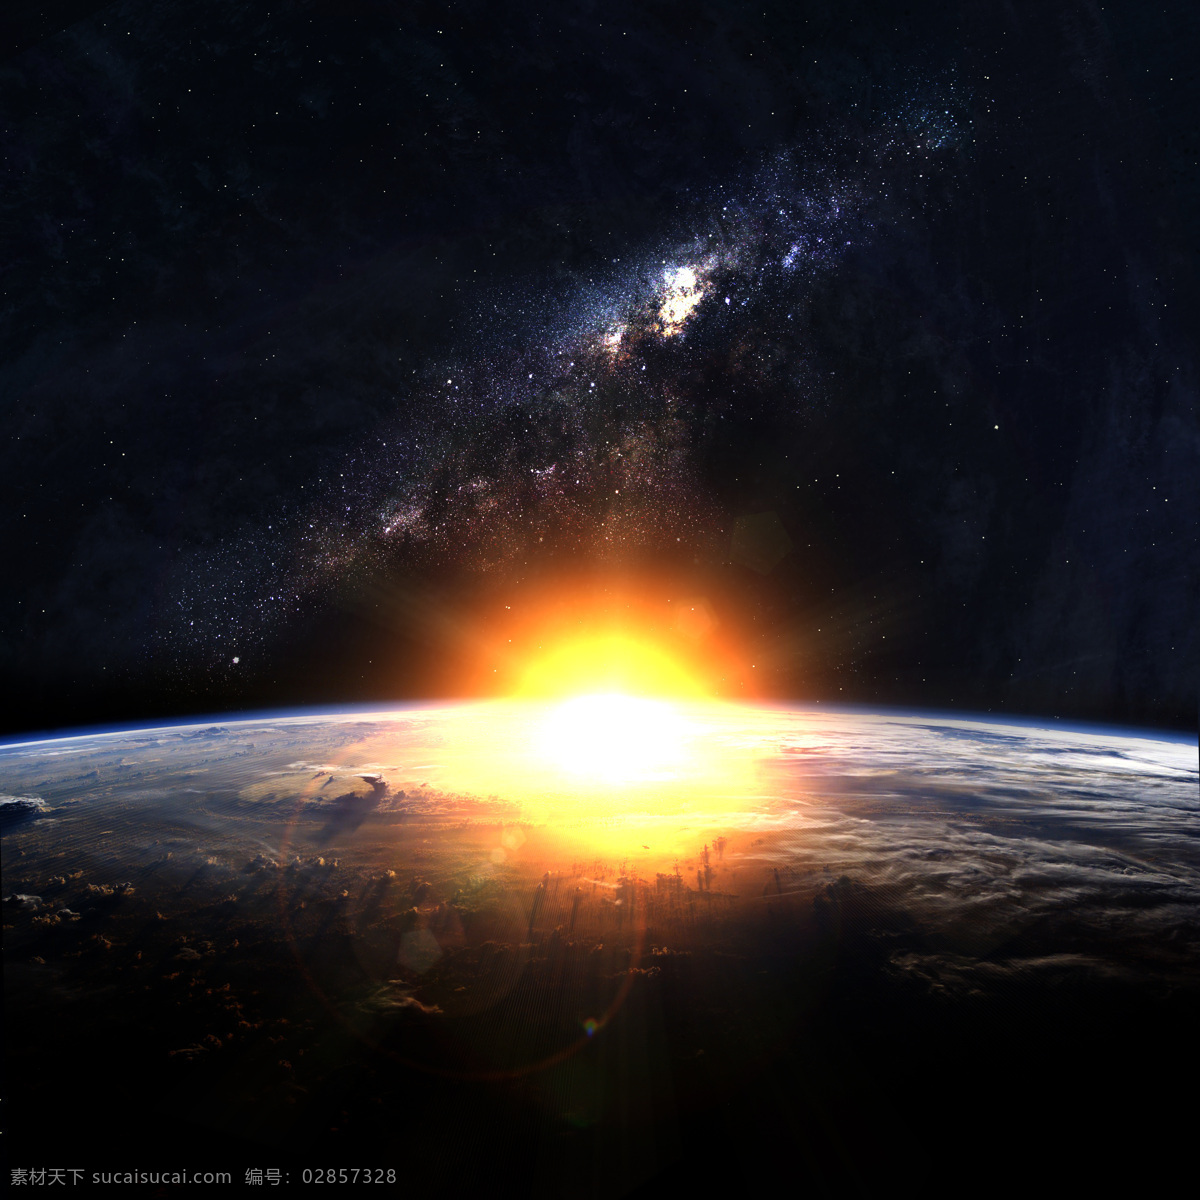 宇宙 中 地平线 地球 太阳 阳光 山水风景 风景图片